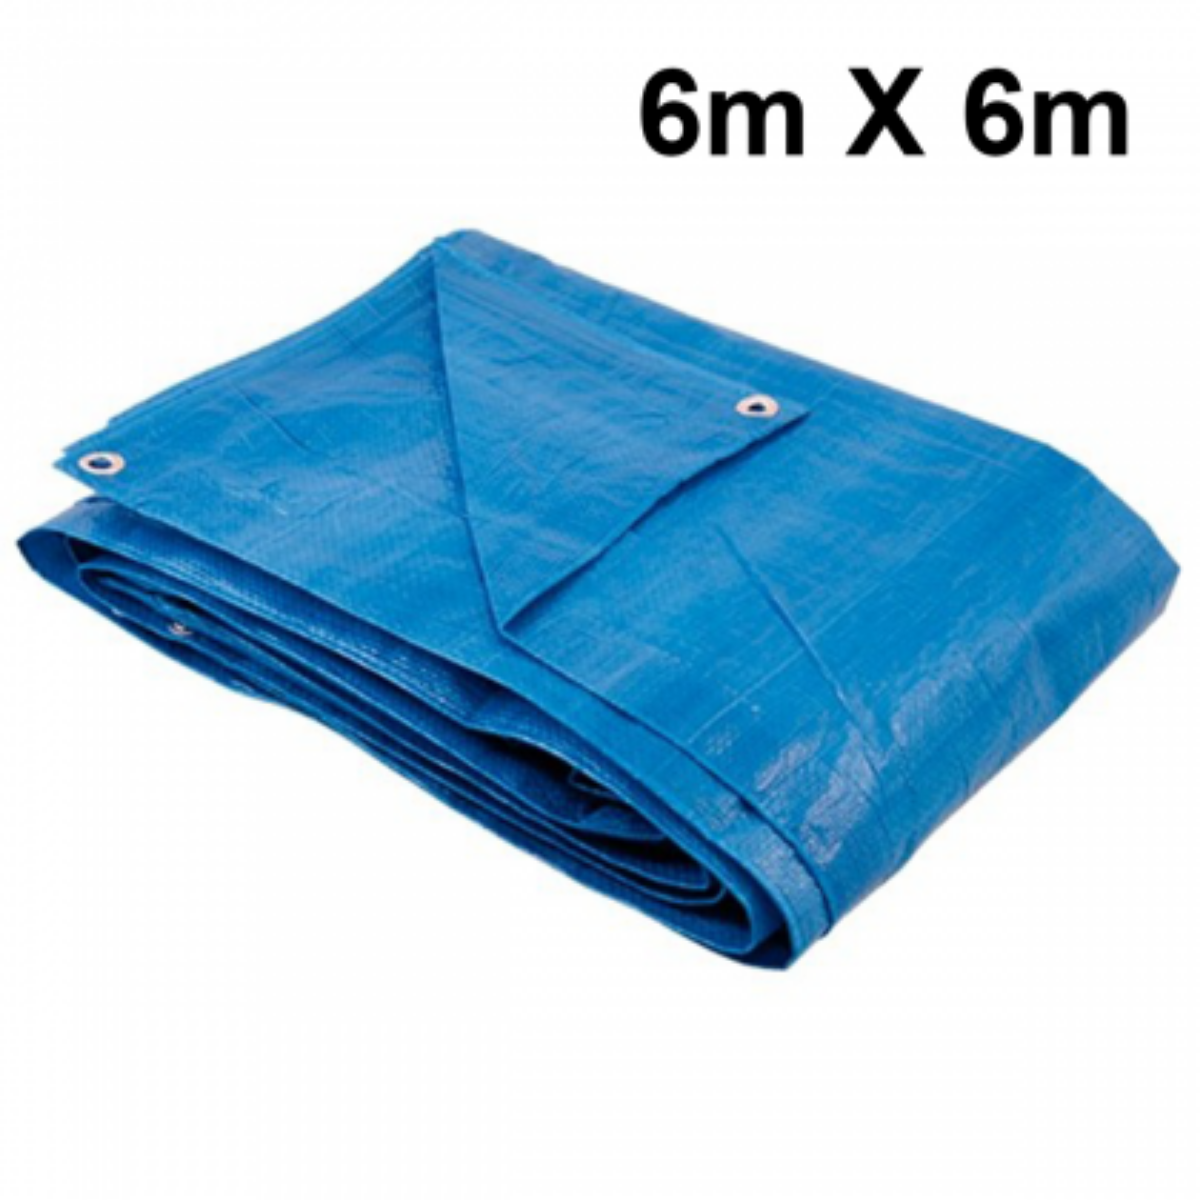 Lona 6x6 Azul Impermeável Carreteiro Piscina 200 Micras Grossa Reforçada - 1